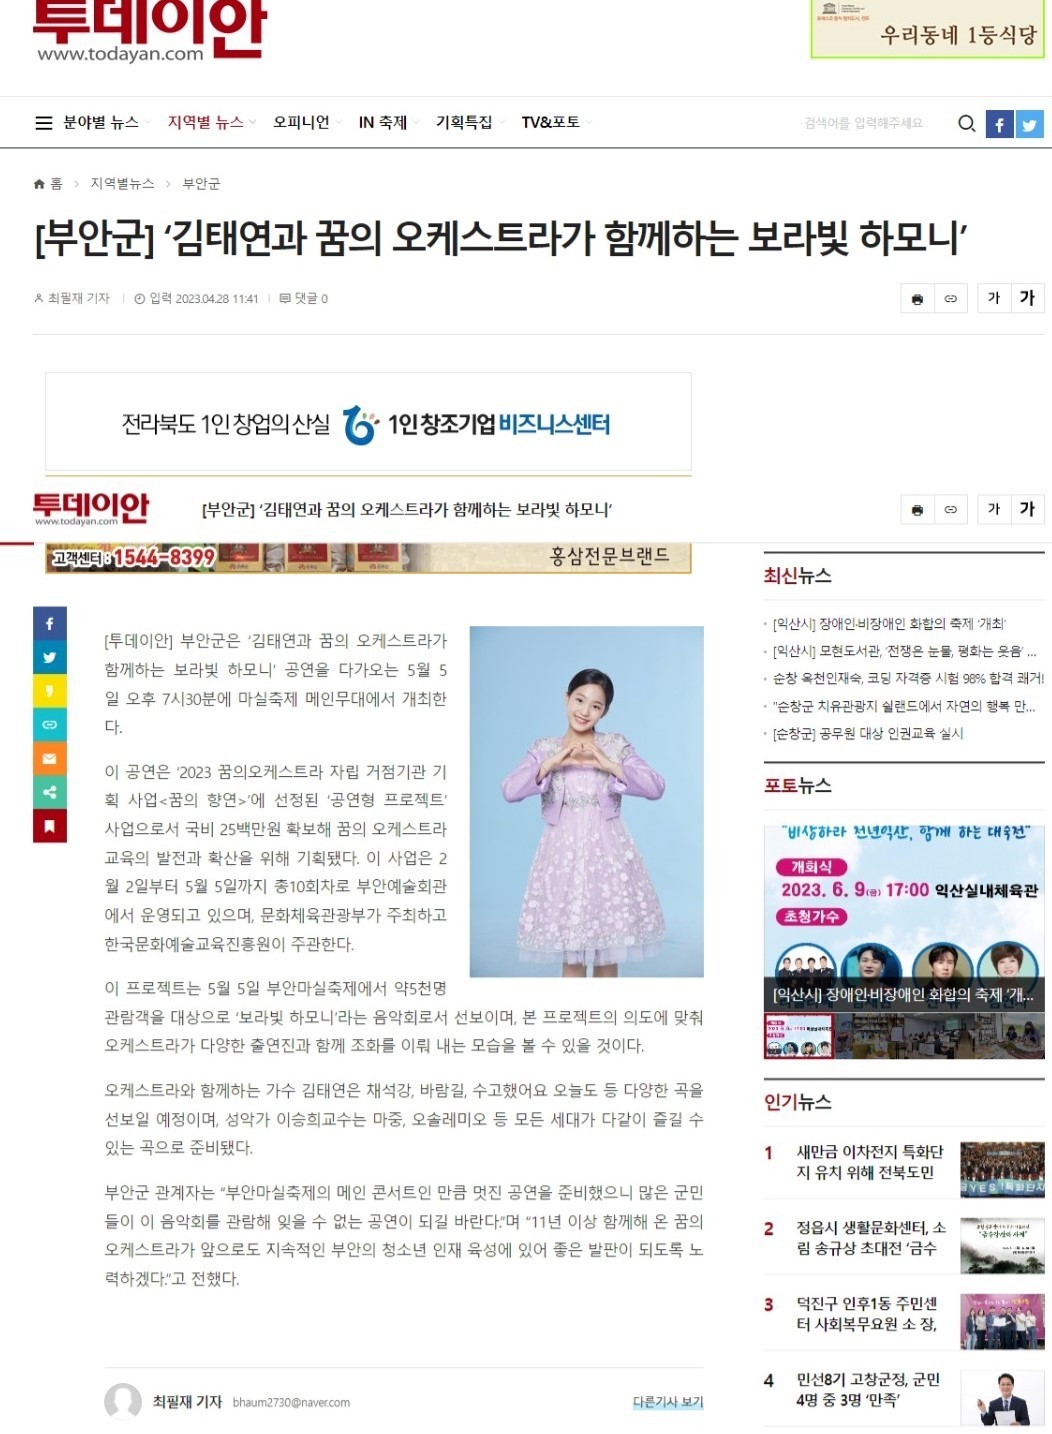 20230428 김태연과 꿈의 오케스트라가 함께 하는 보라빛하모니 보도자료 1번째 이미지